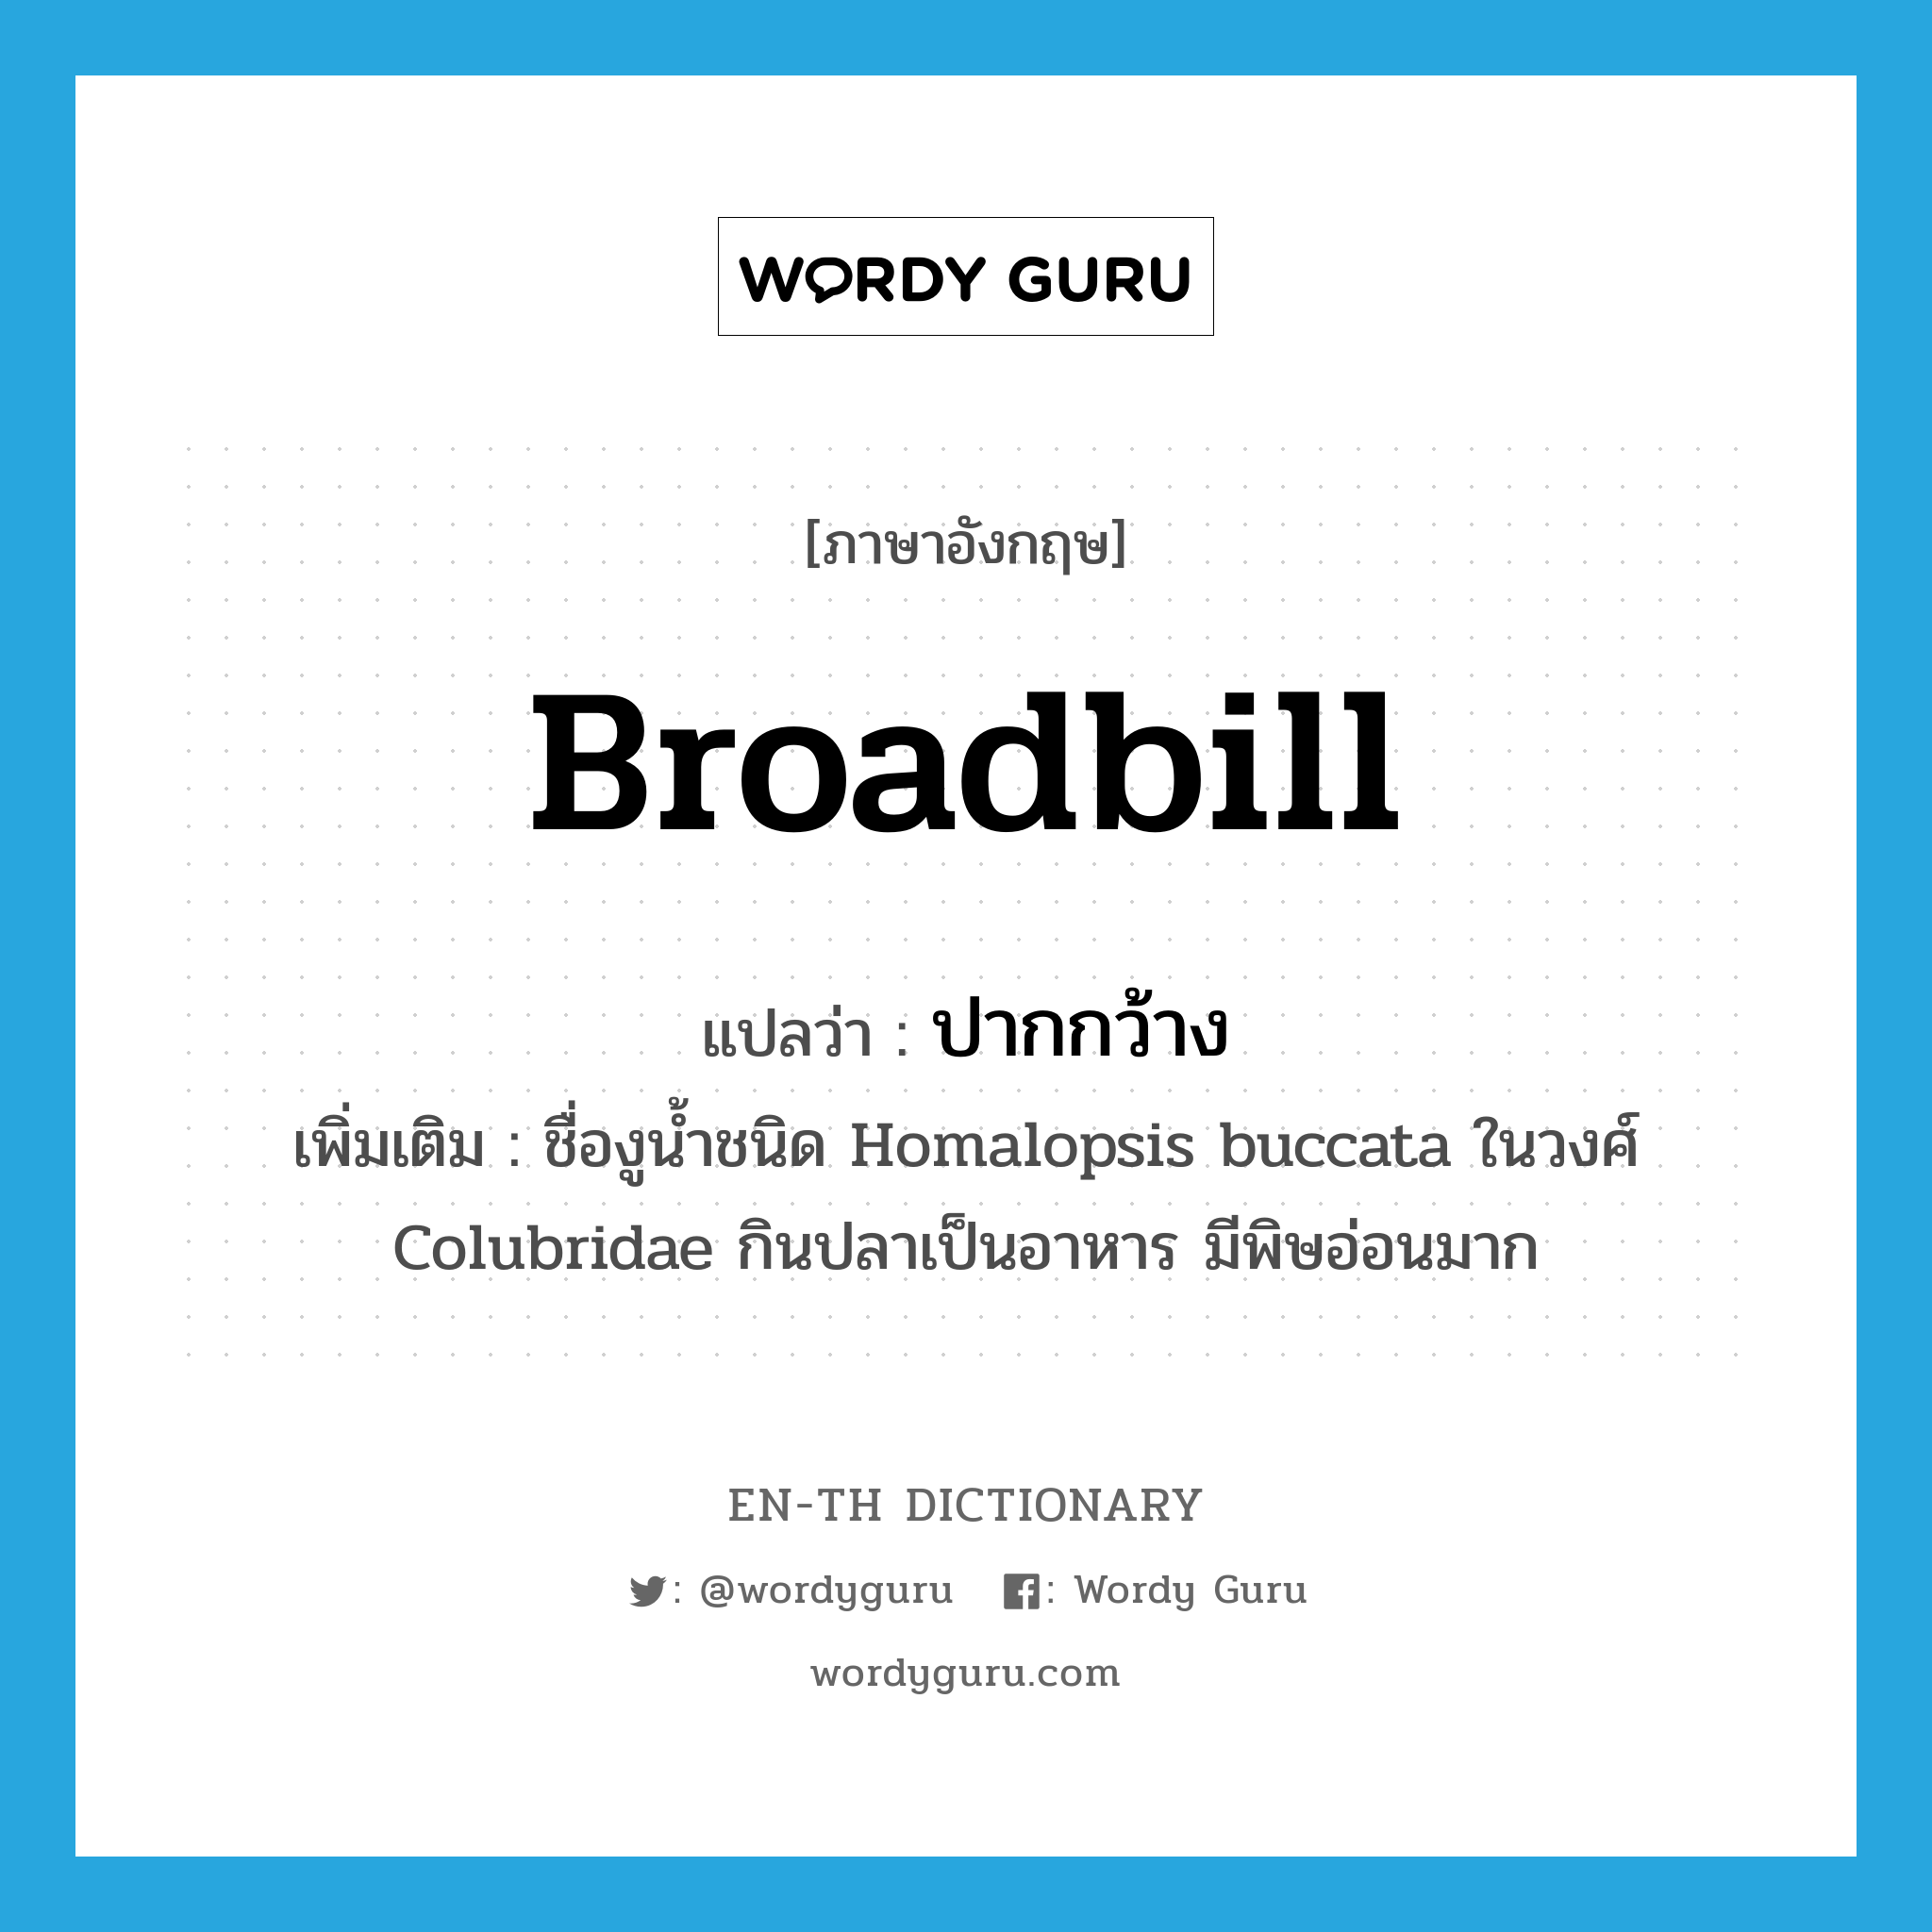 broadbill แปลว่า?, คำศัพท์ภาษาอังกฤษ broadbill แปลว่า ปากกว้าง ประเภท N เพิ่มเติม ชื่องูน้ำชนิด Homalopsis buccata ในวงศ์ Colubridae กินปลาเป็นอาหาร มีพิษอ่อนมาก หมวด N